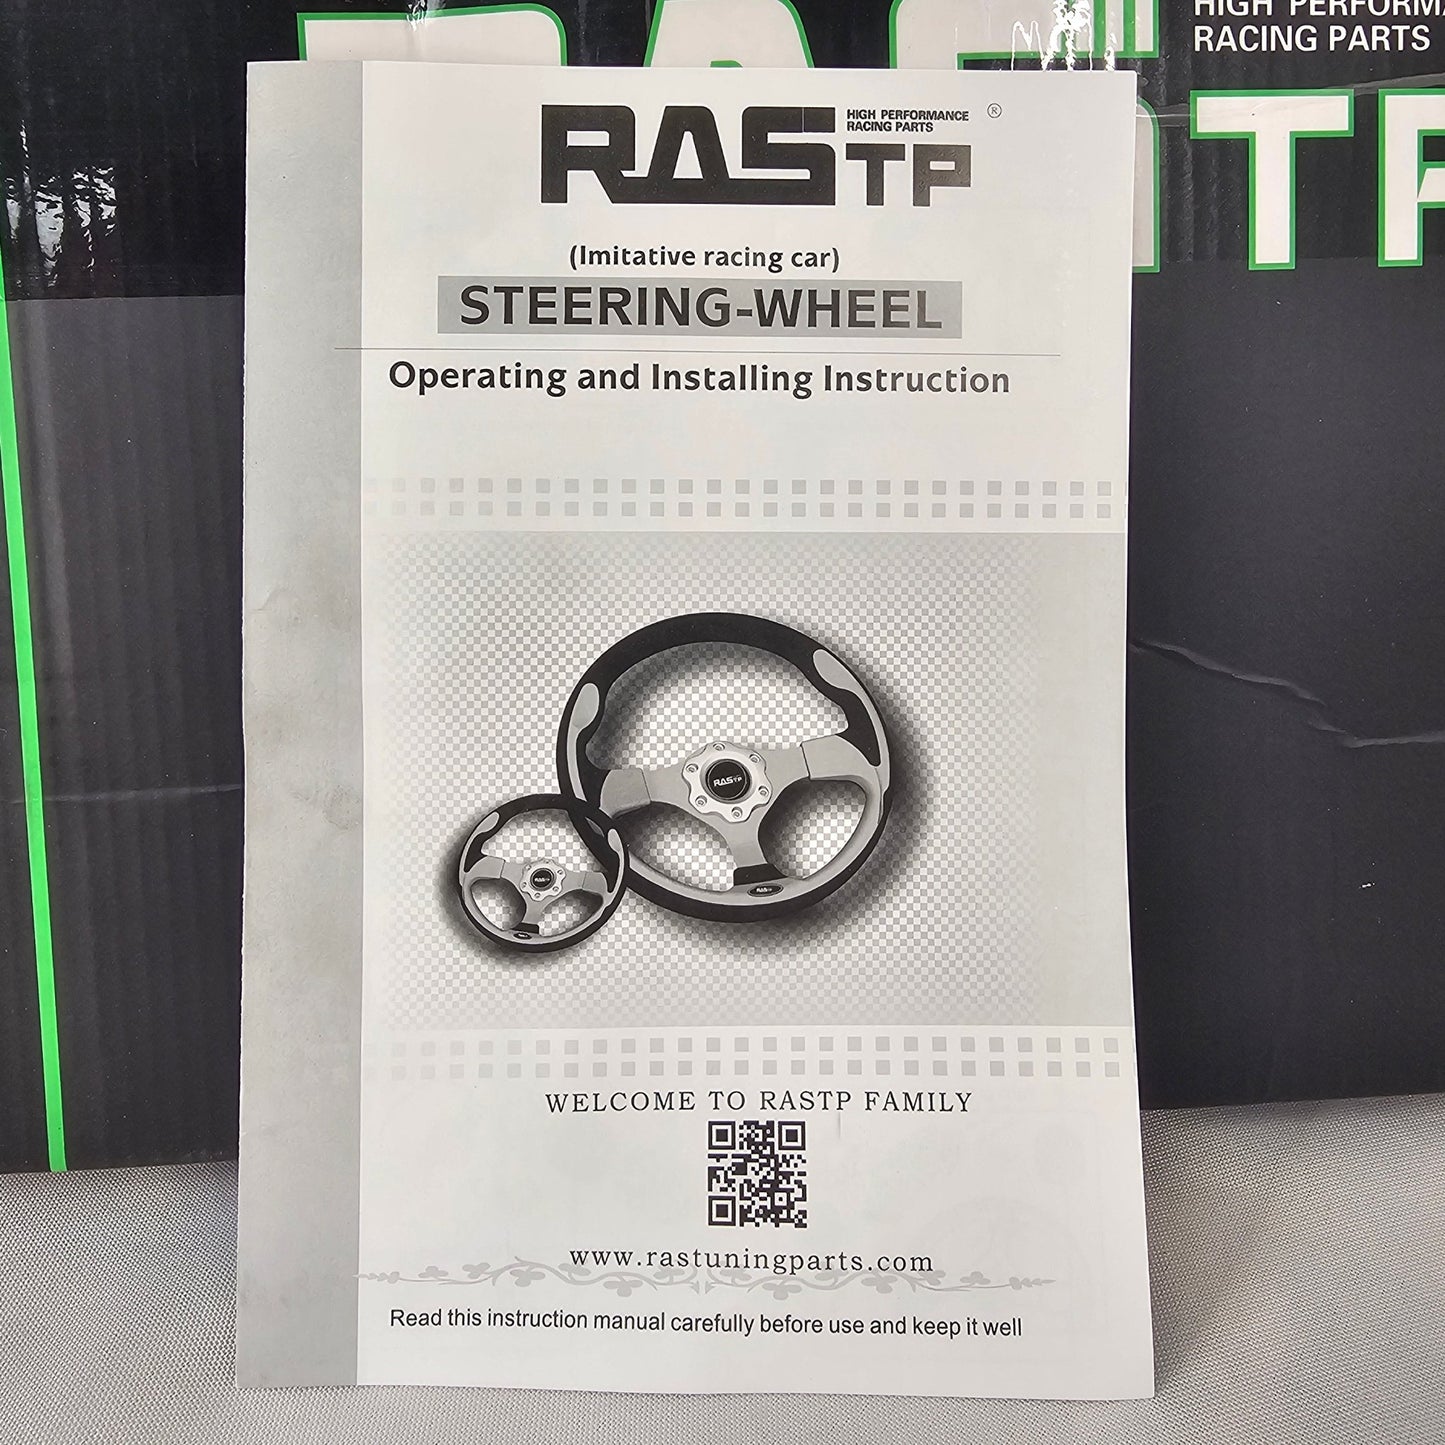 Racing Steering Wheel Rastp Black - DQ Distribution